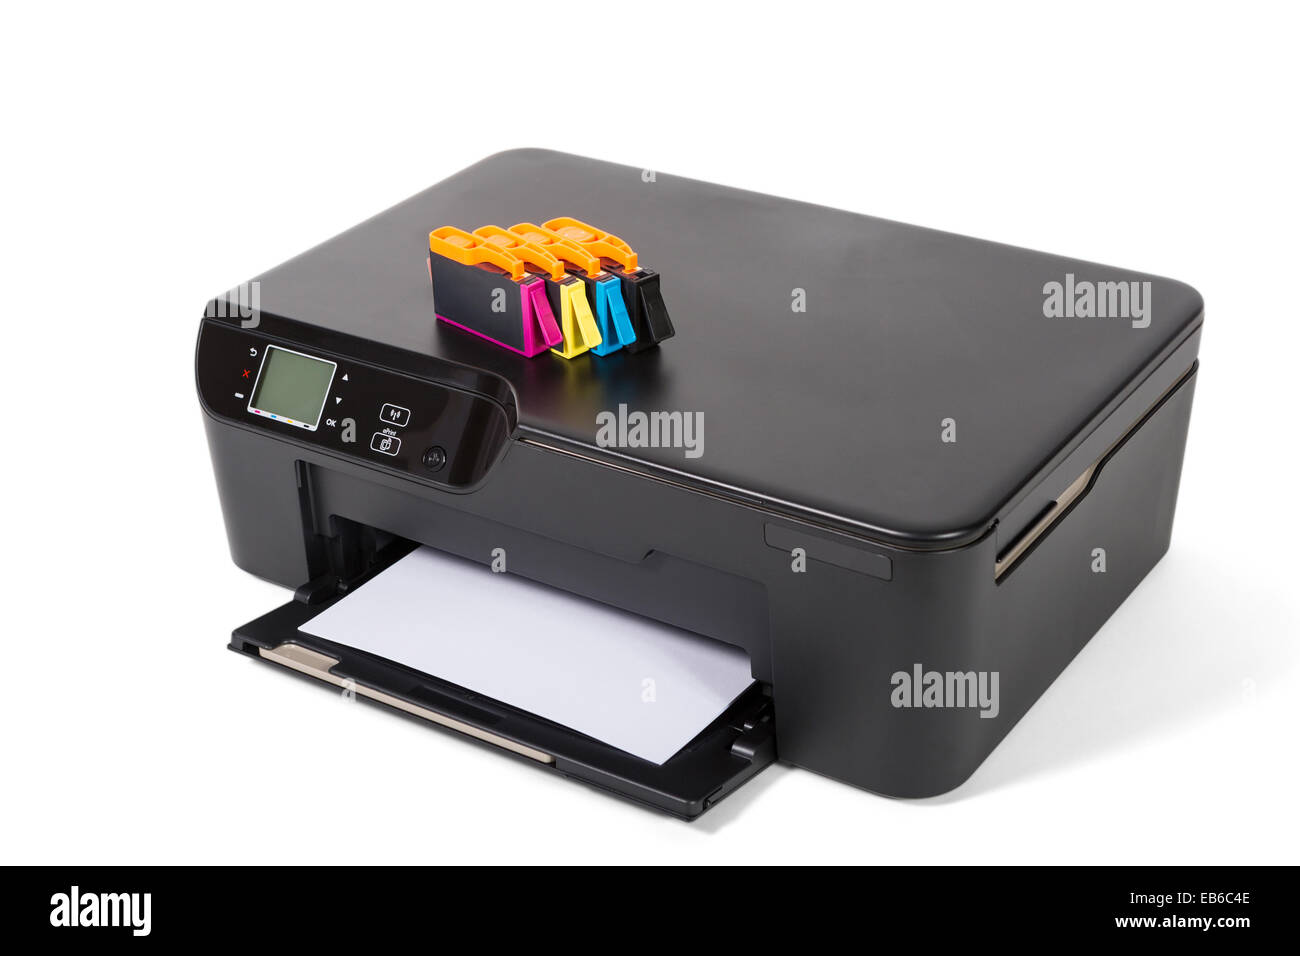 https://c8.alamy.com/compes/eb6c4e/impresora-escaner-copiadora-aislado-sobre-fondo-blanco-eb6c4e.jpg